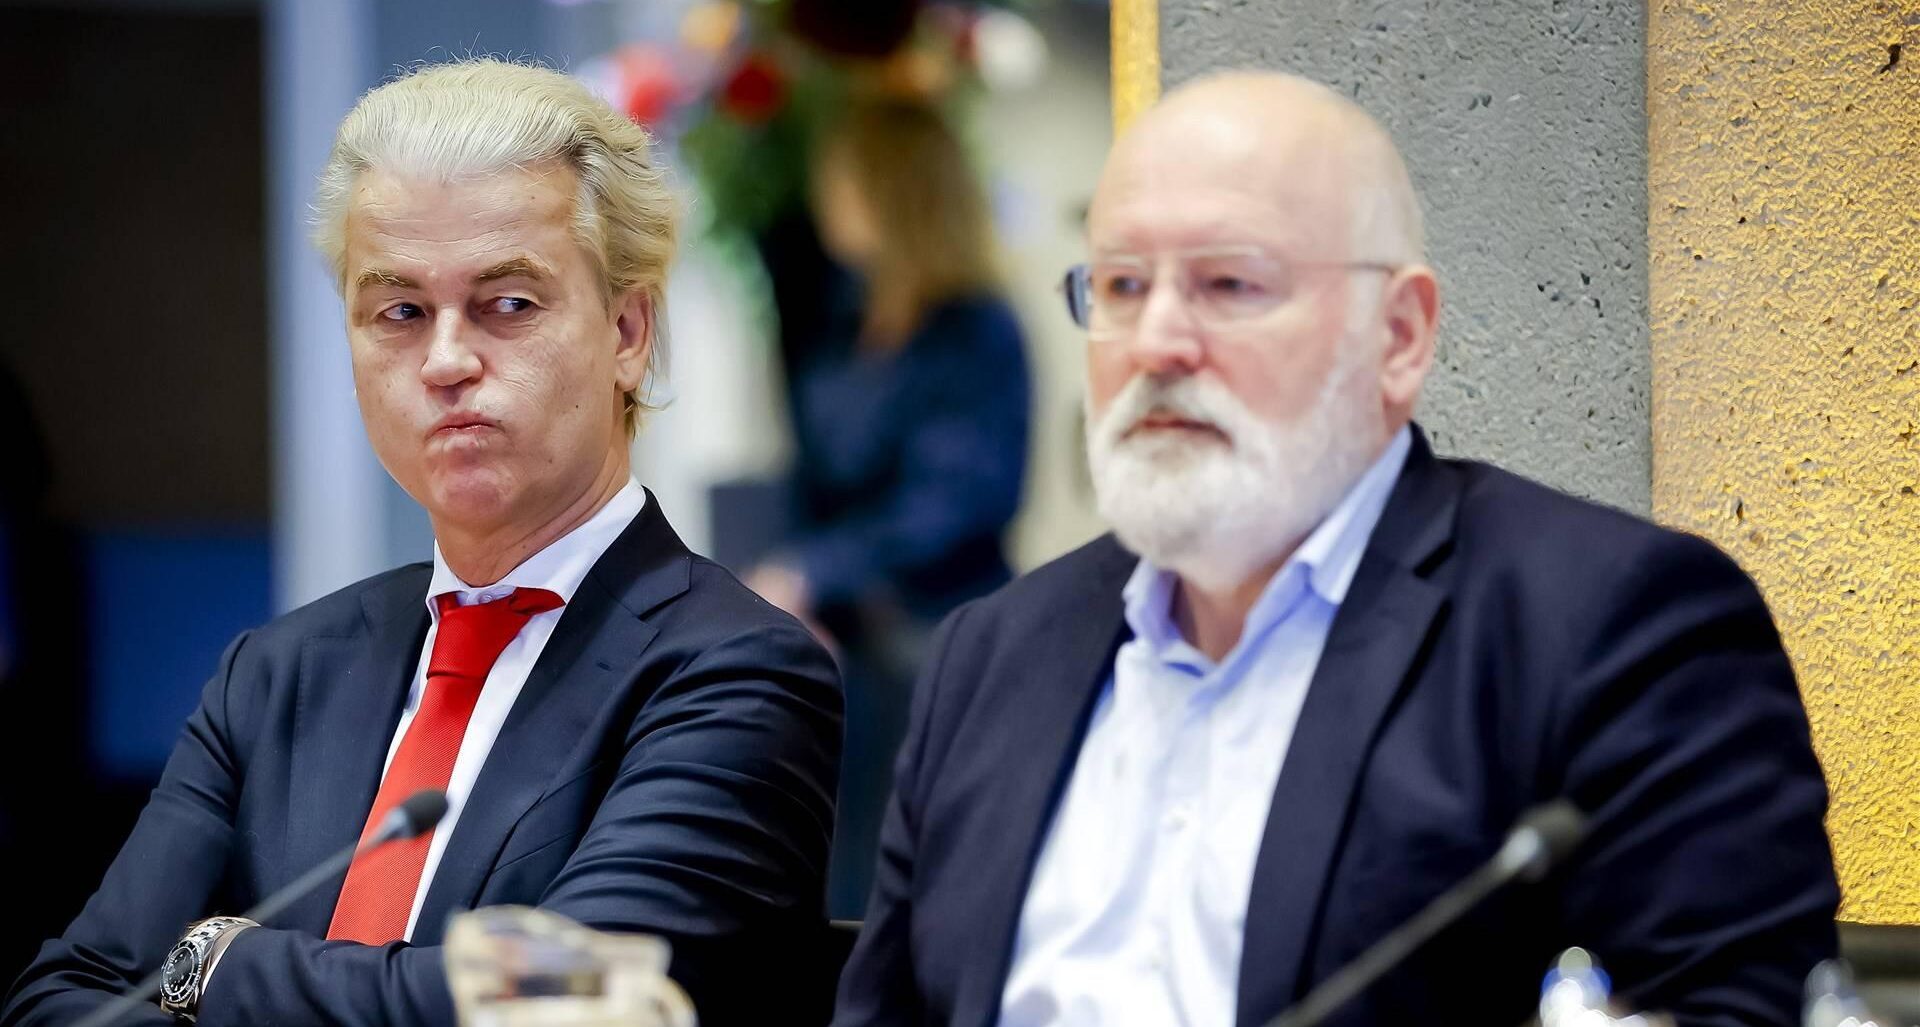 Dit vindt het OM van de ‘bedreiging’ van Timmermans richting Wilders